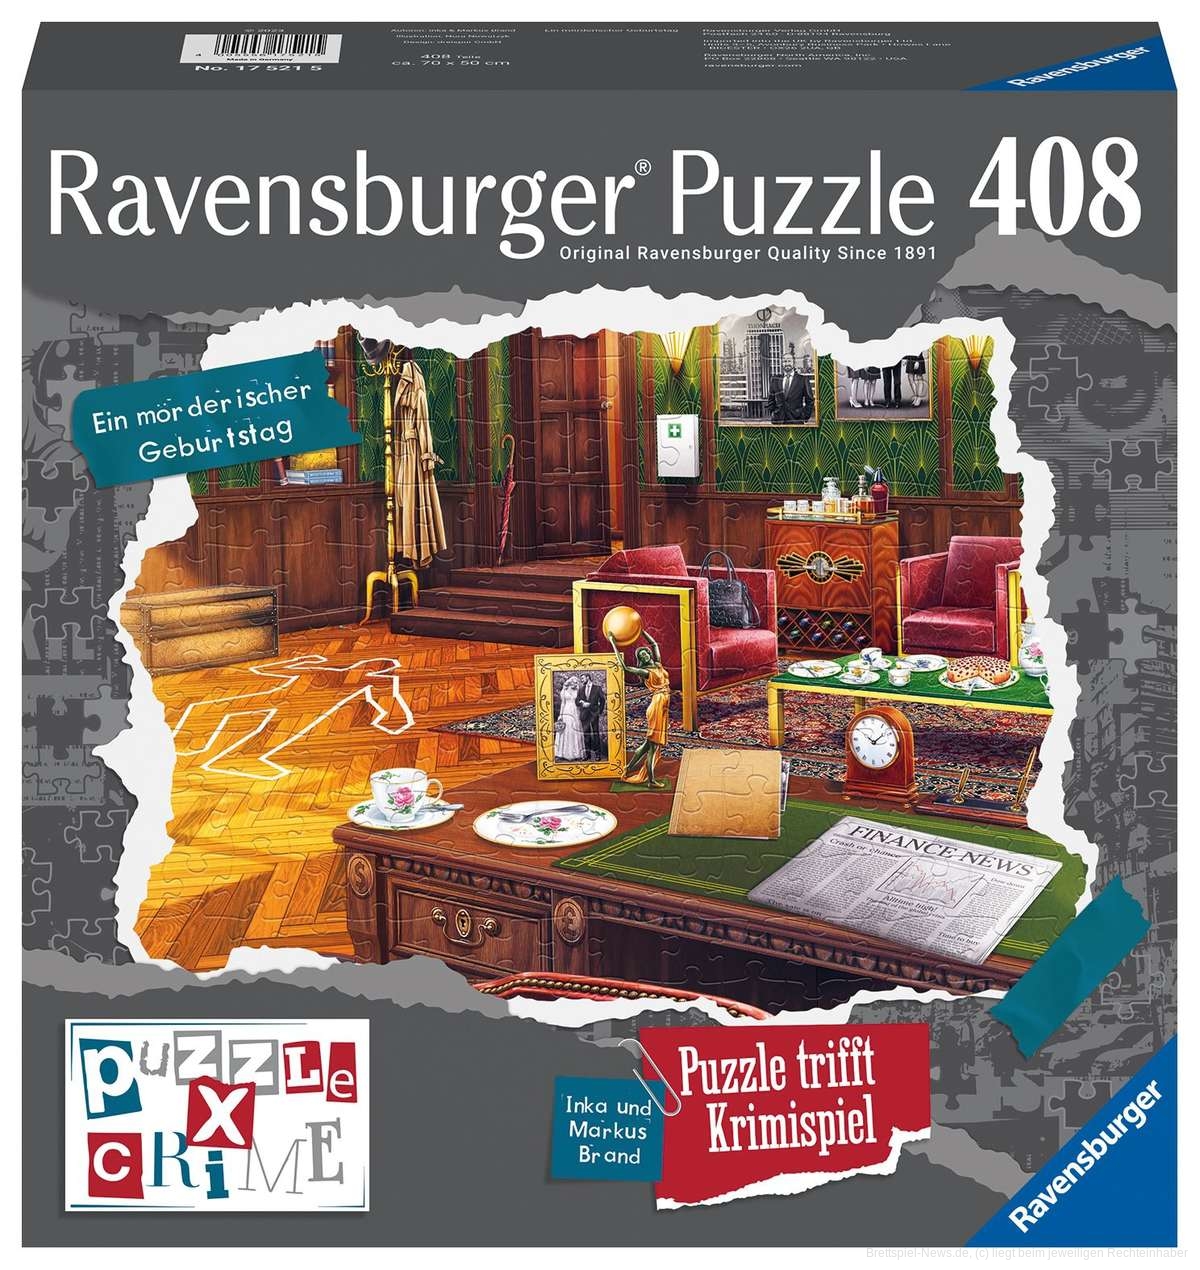 Ravensburger Puzzle X Crime Ein mörderischer Geburtstag Produktabbildung